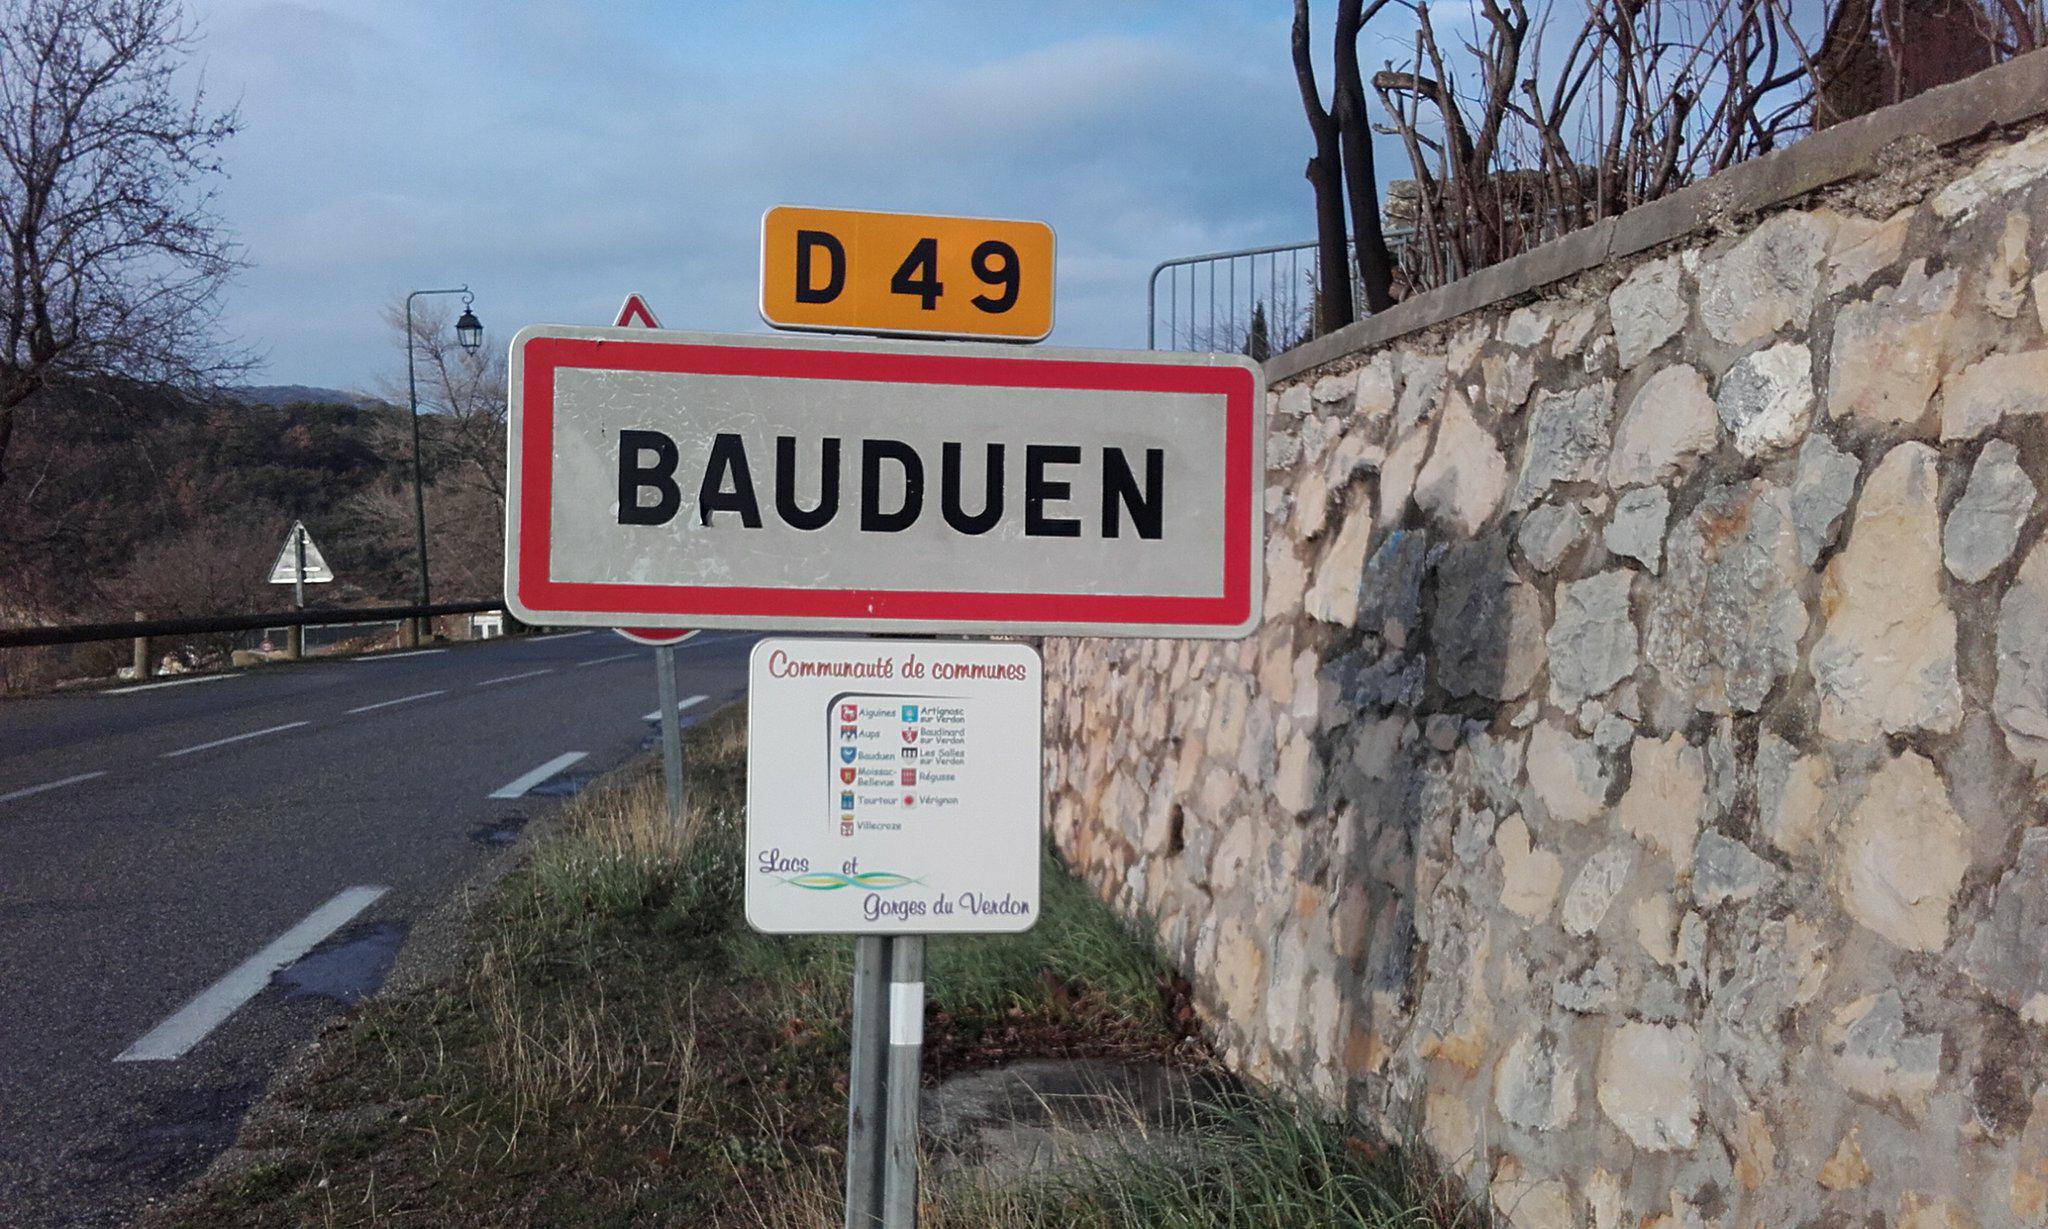 Bauduen - Bauduen